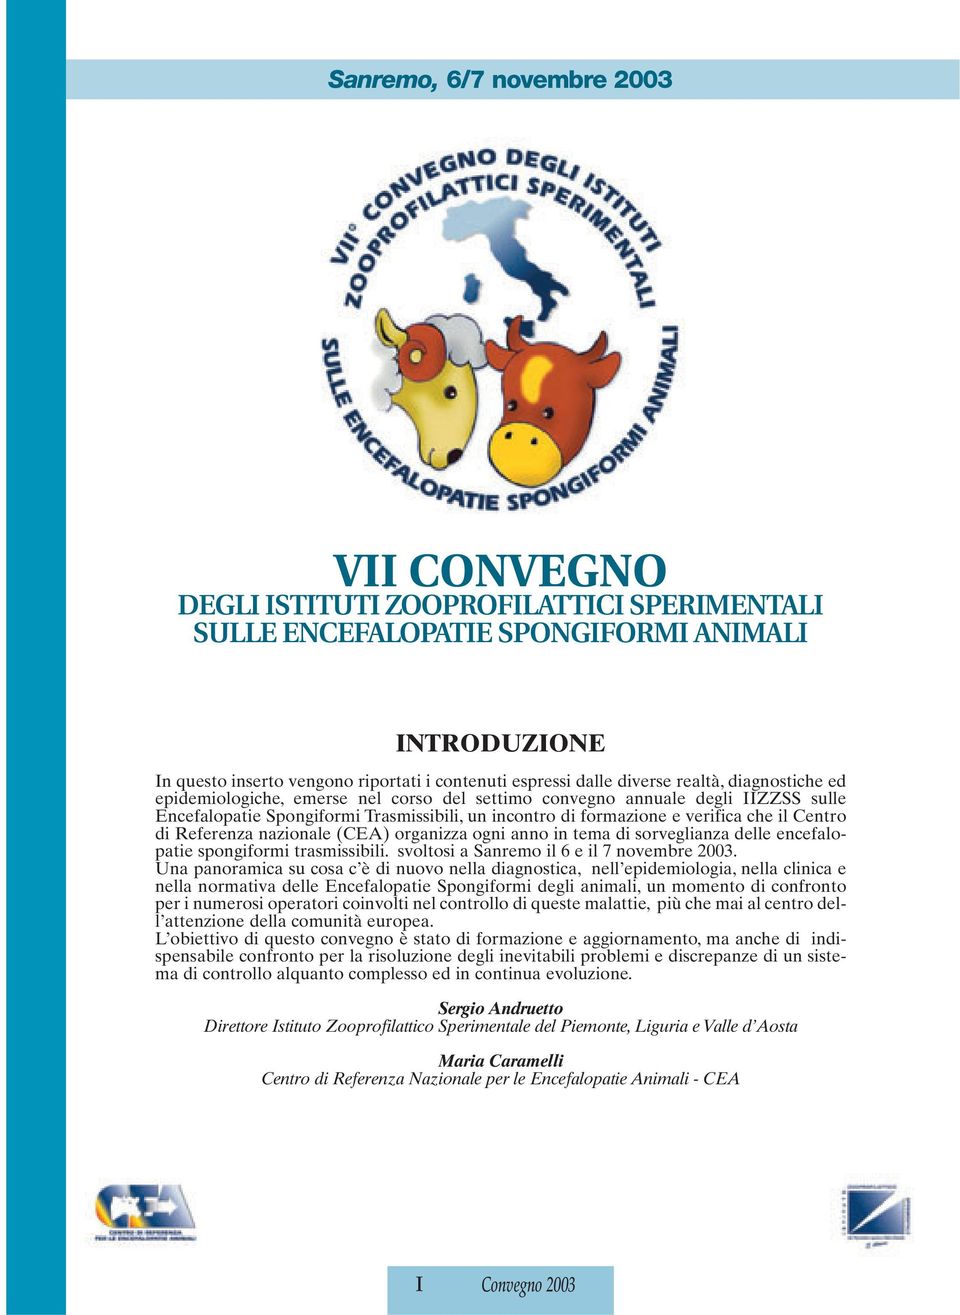 Referenza nazionale (CEA) organizza ogni anno in tema di sorveglianza delle encefalopatie spongiformi trasmissibili. svoltosi a Sanremo il 6 e il 7 novembre 2003.